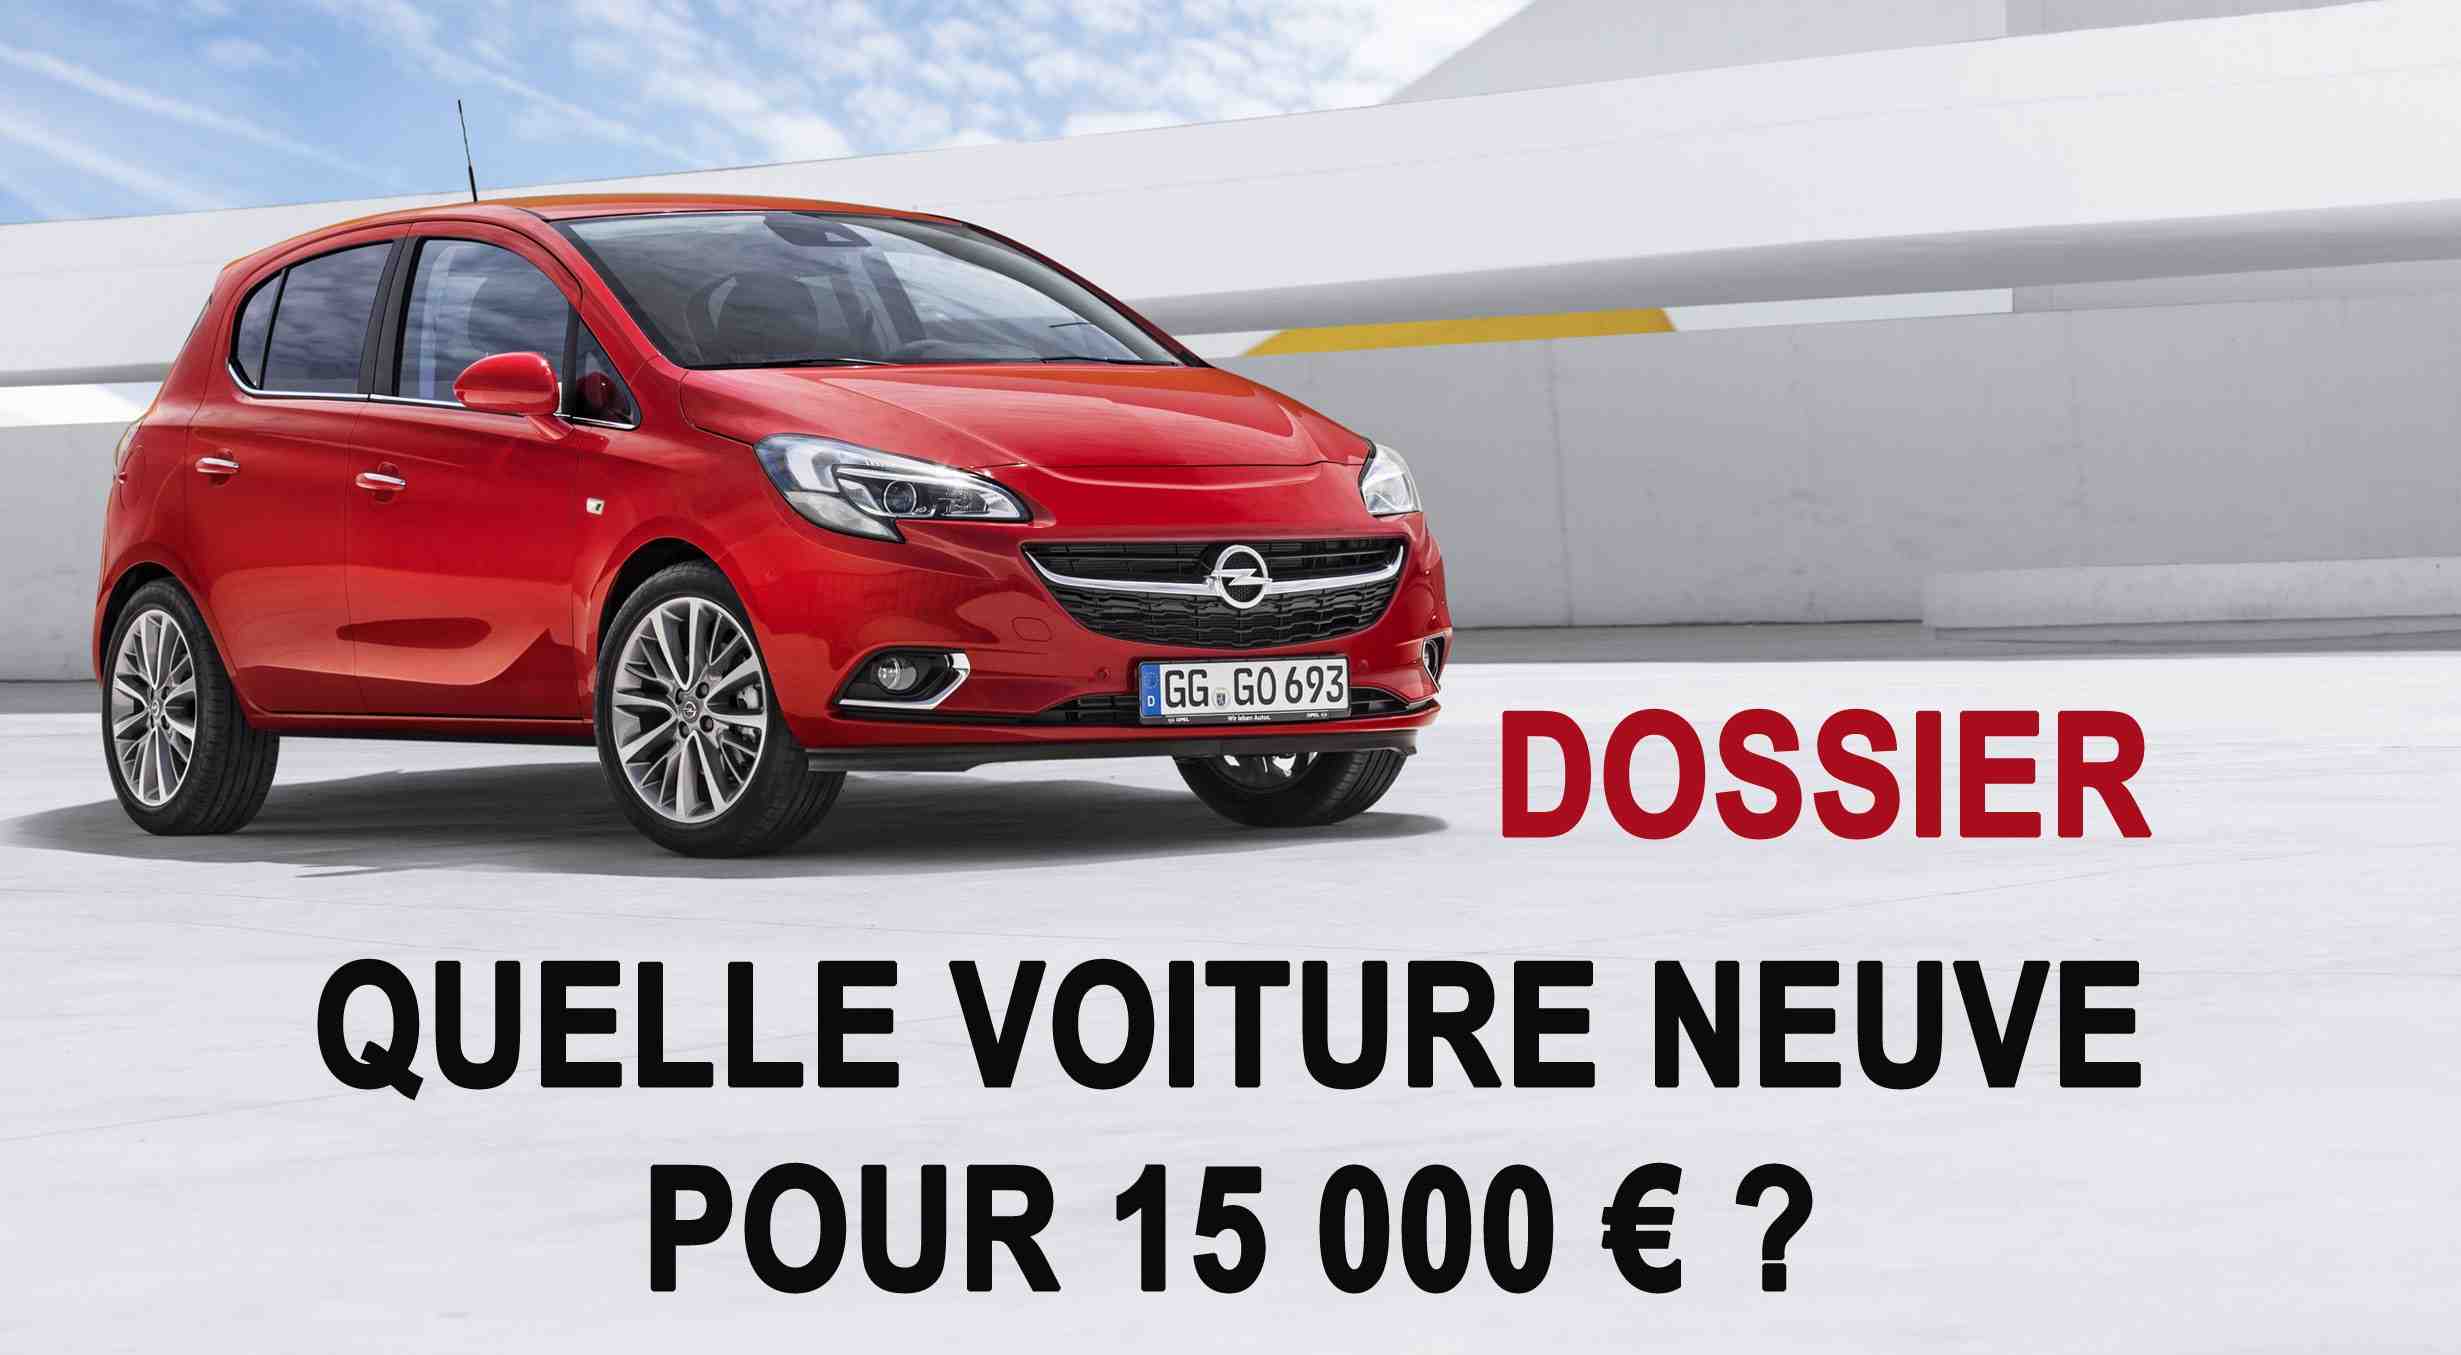 Quelle voiture pour 20 000 €?